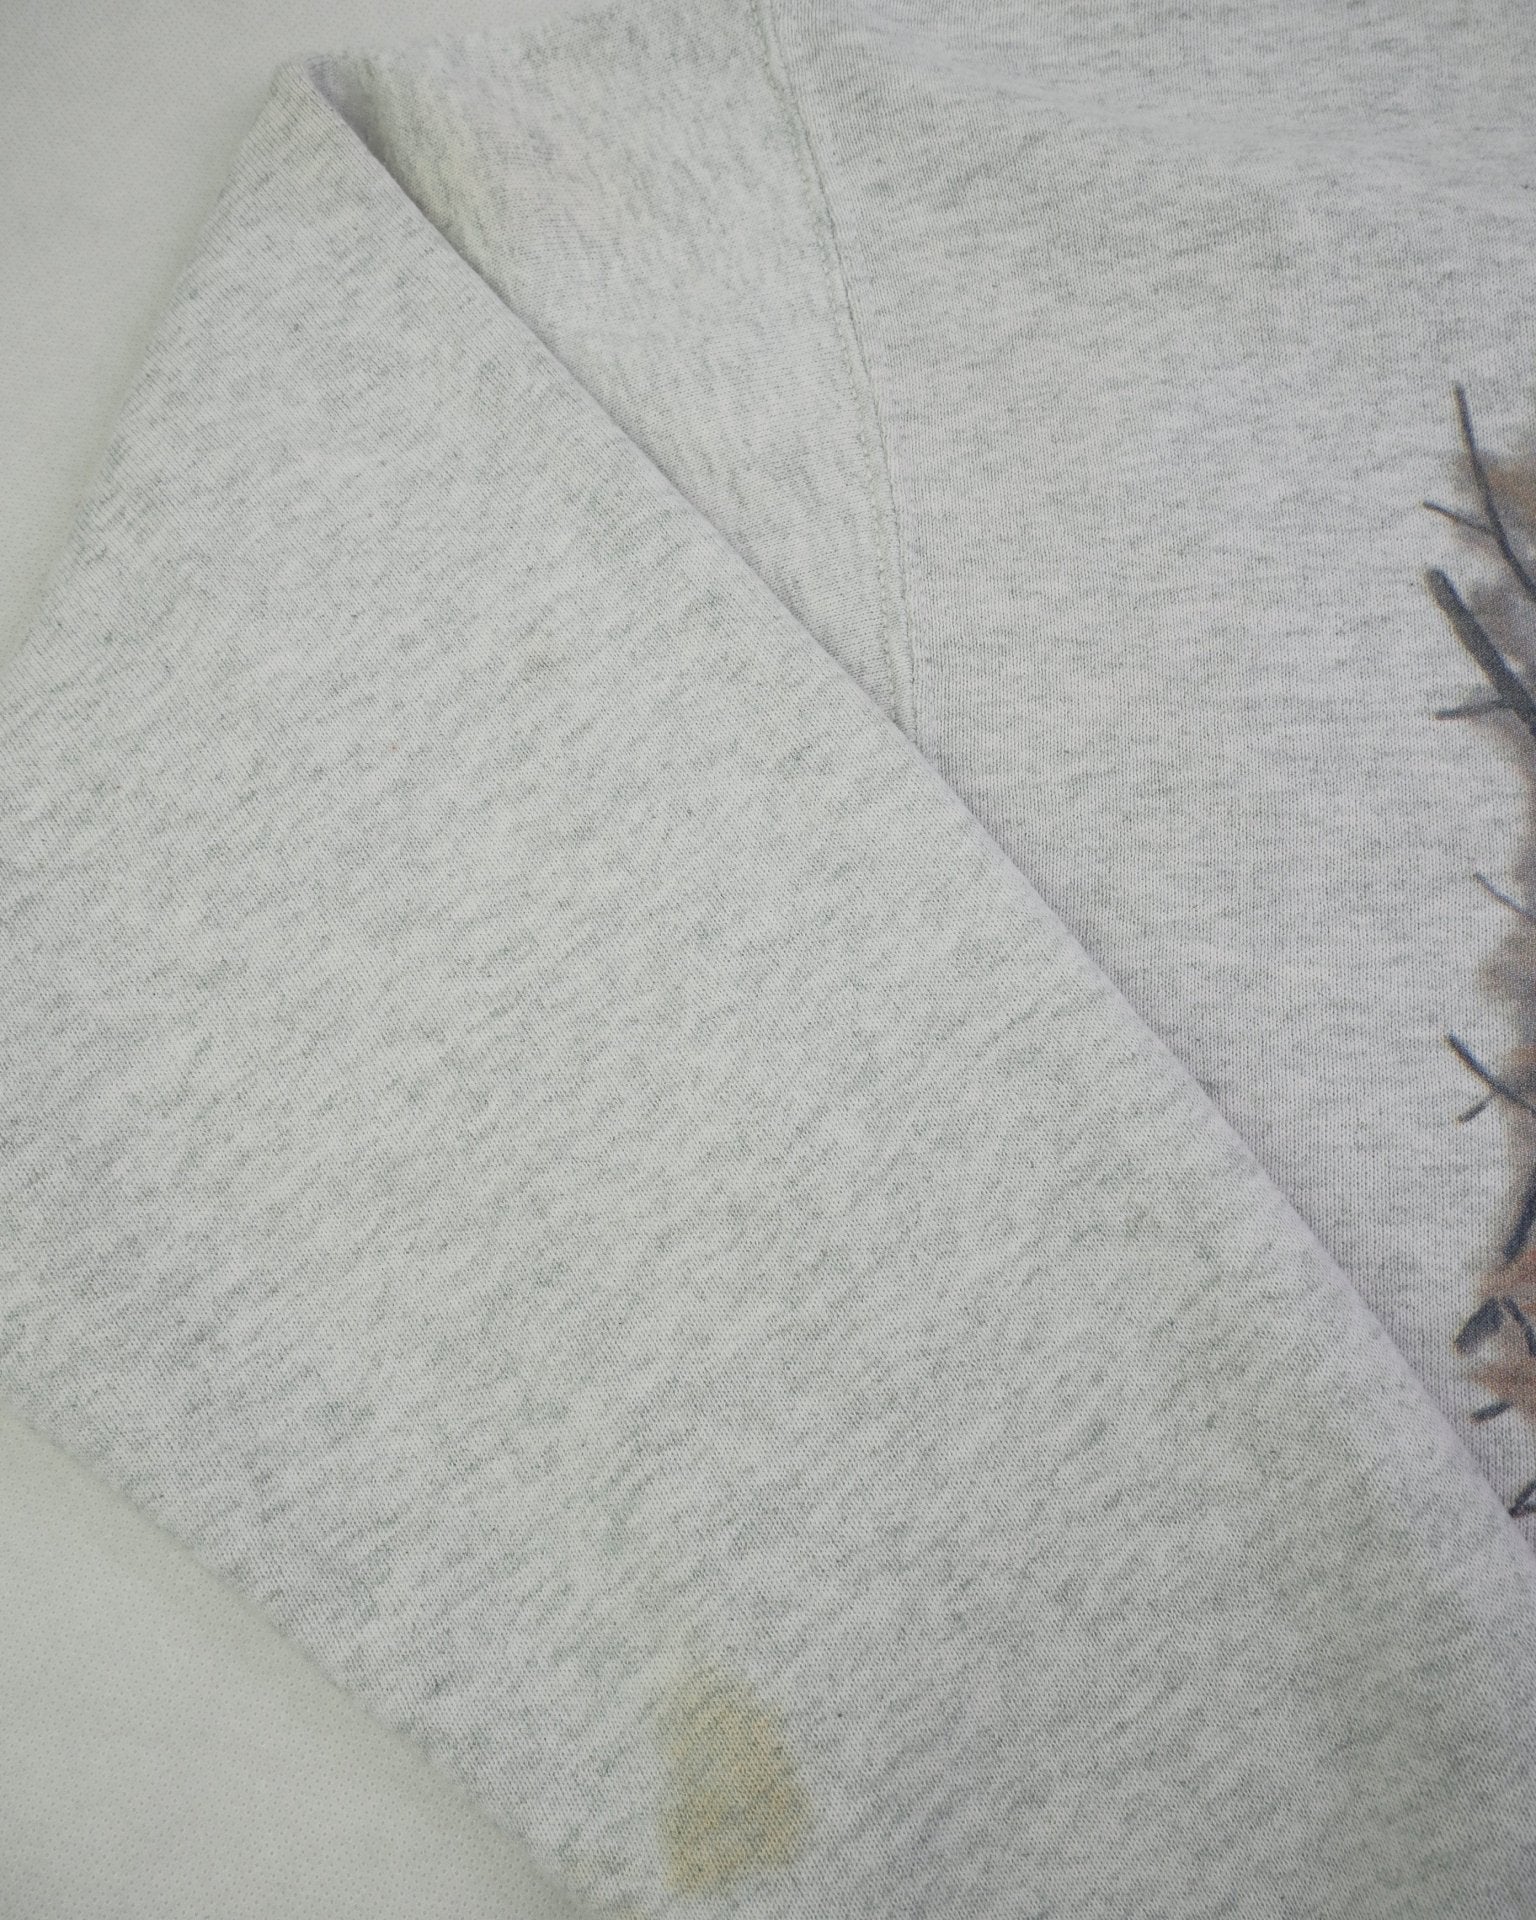 Deer printed Graphic grey Vintage Sweater - Peeces